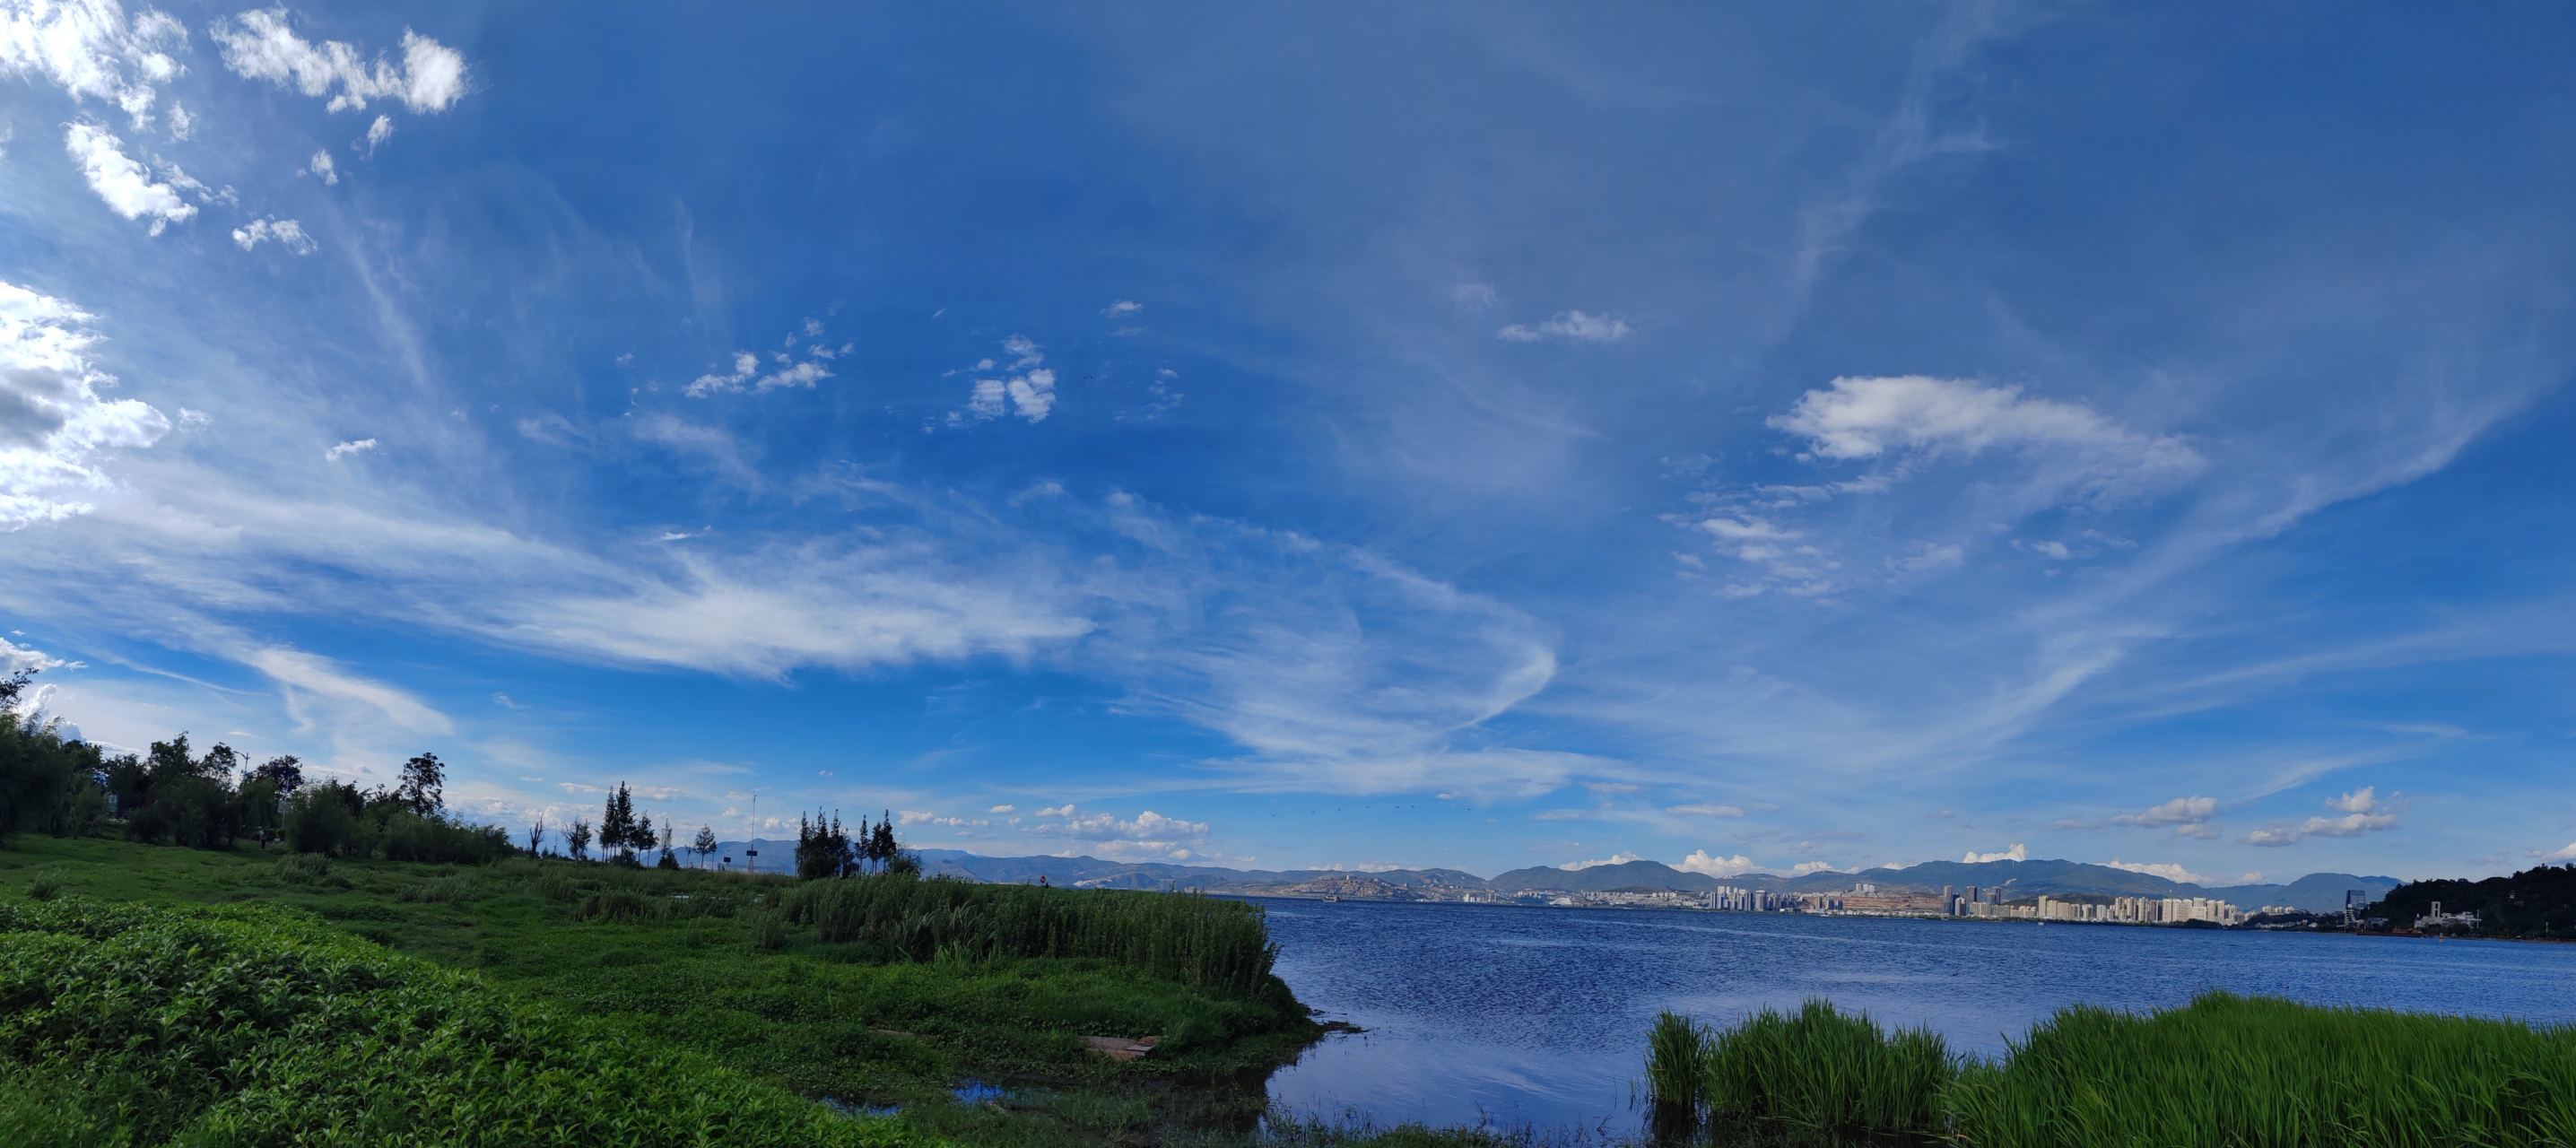 苍山洱海全景图图片